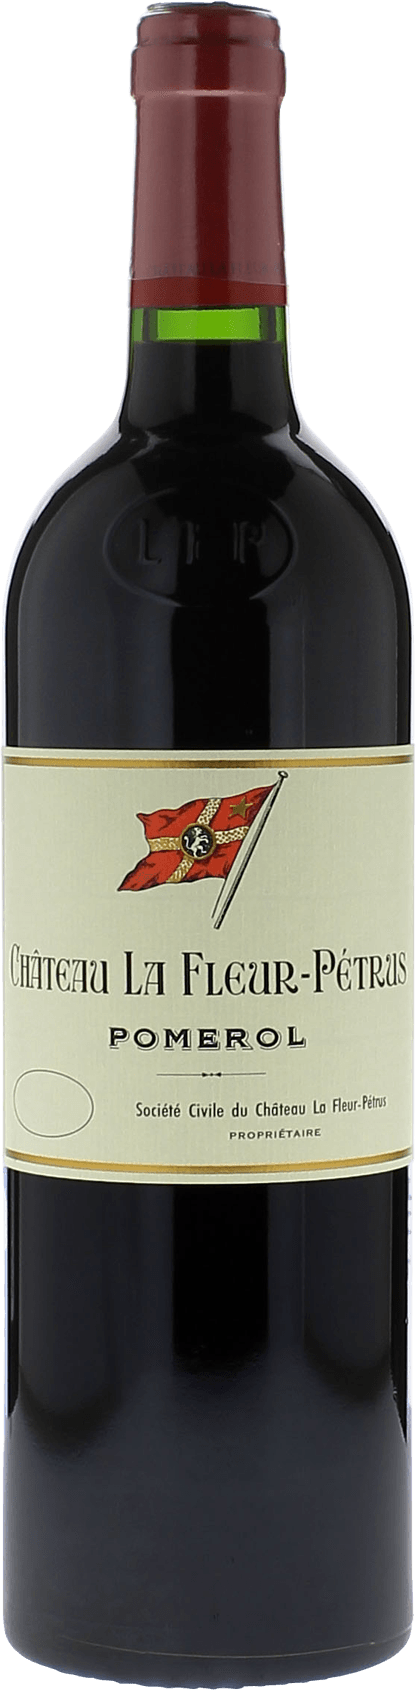 La fleur petrus 2009  Pomerol, Bordeaux rouge